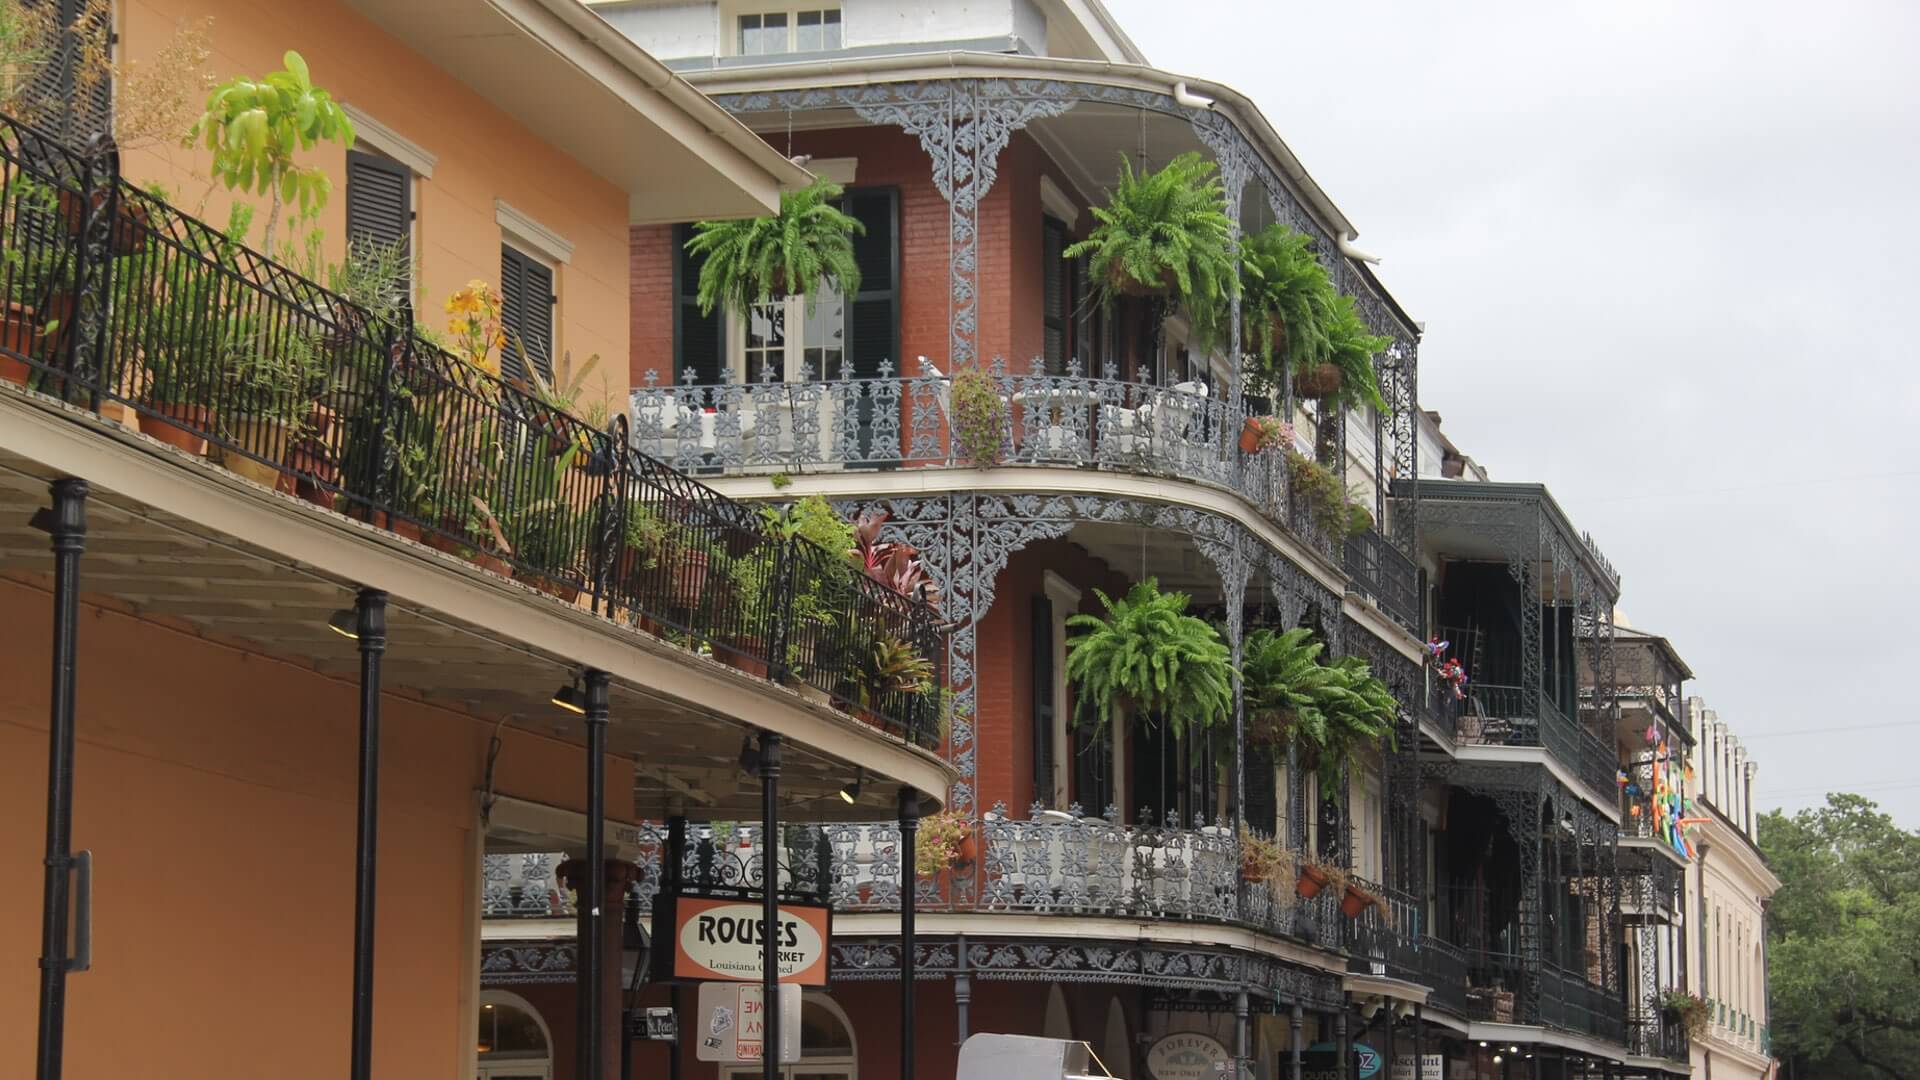 Häuser mit Balkonen in New Orleans.